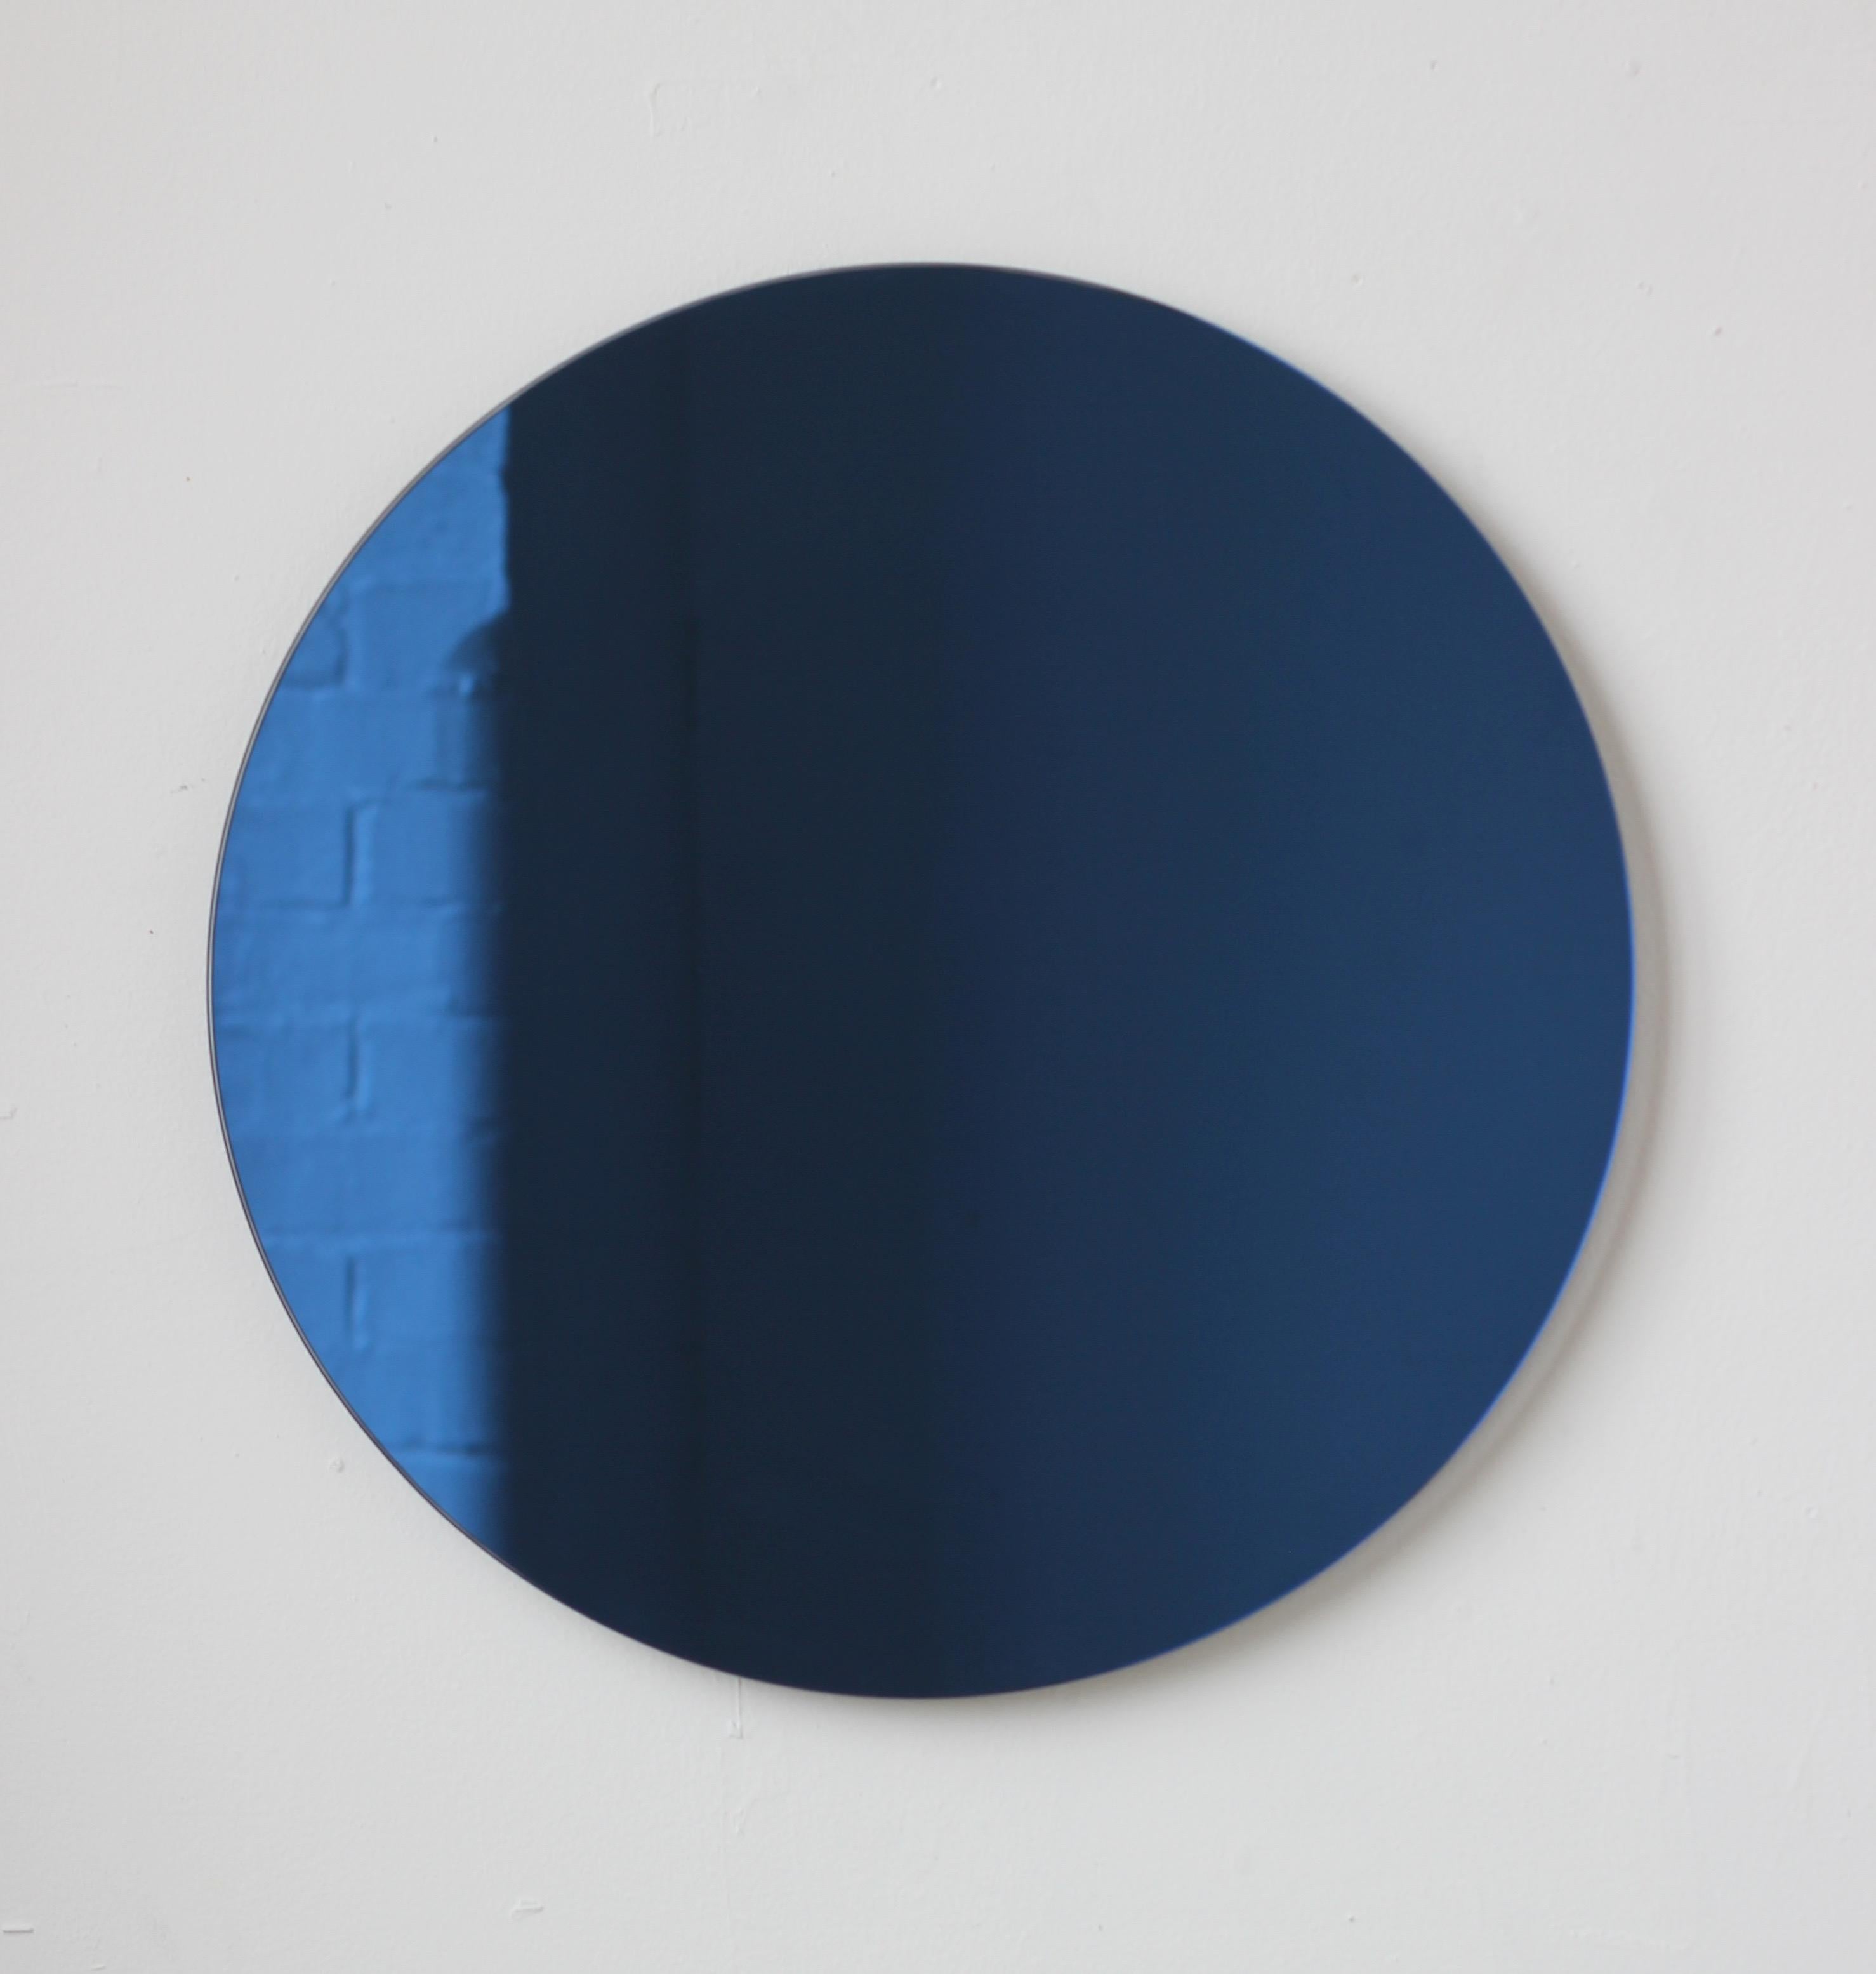 Charmant et minimaliste miroir rond sans cadre Orbis™ teinté de bleu avec un effet flottant. Un design de qualité qui garantit que le miroir est parfaitement parallèle au mur. Conçu et fabriqué à Londres, au Royaume-Uni.

Equipé de plaques